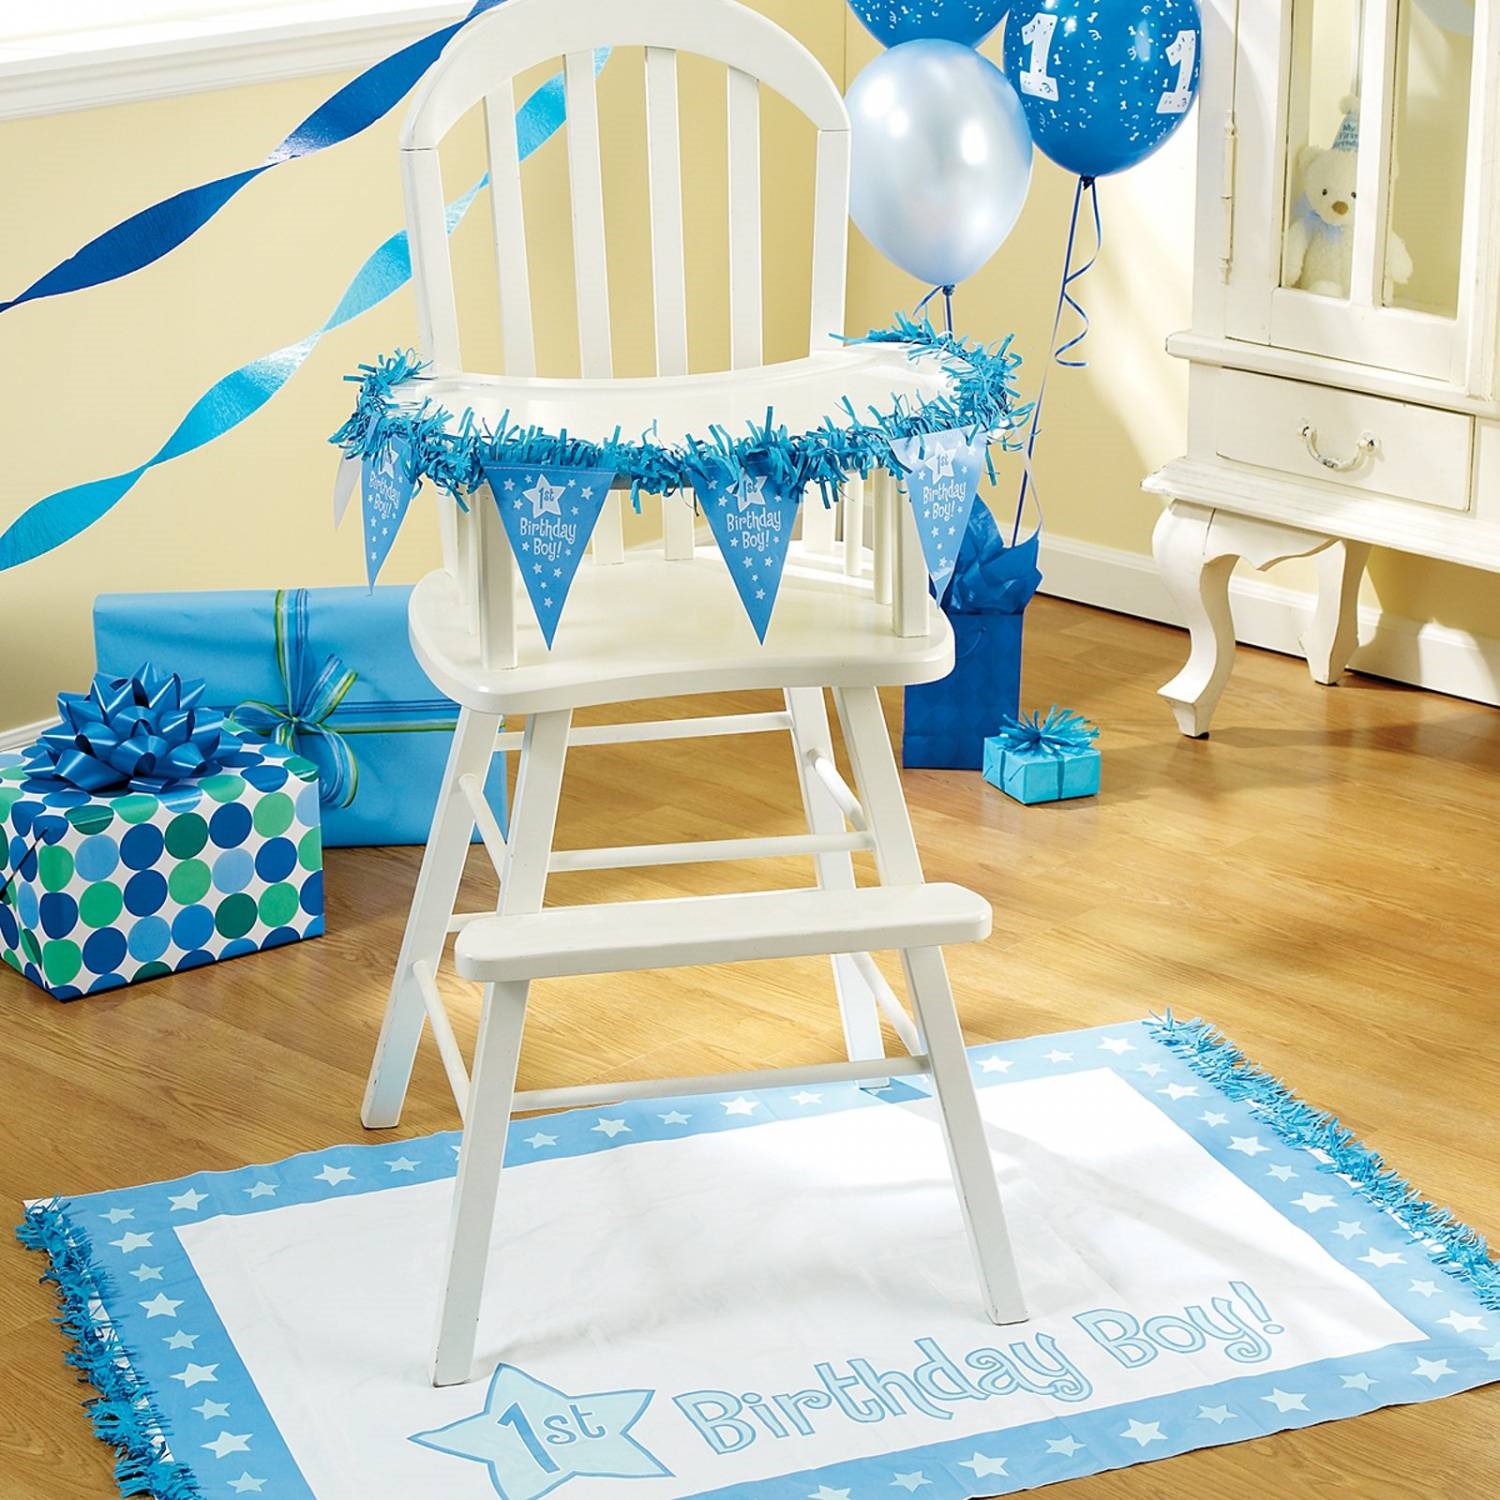 стол для мальчиков на день рождения